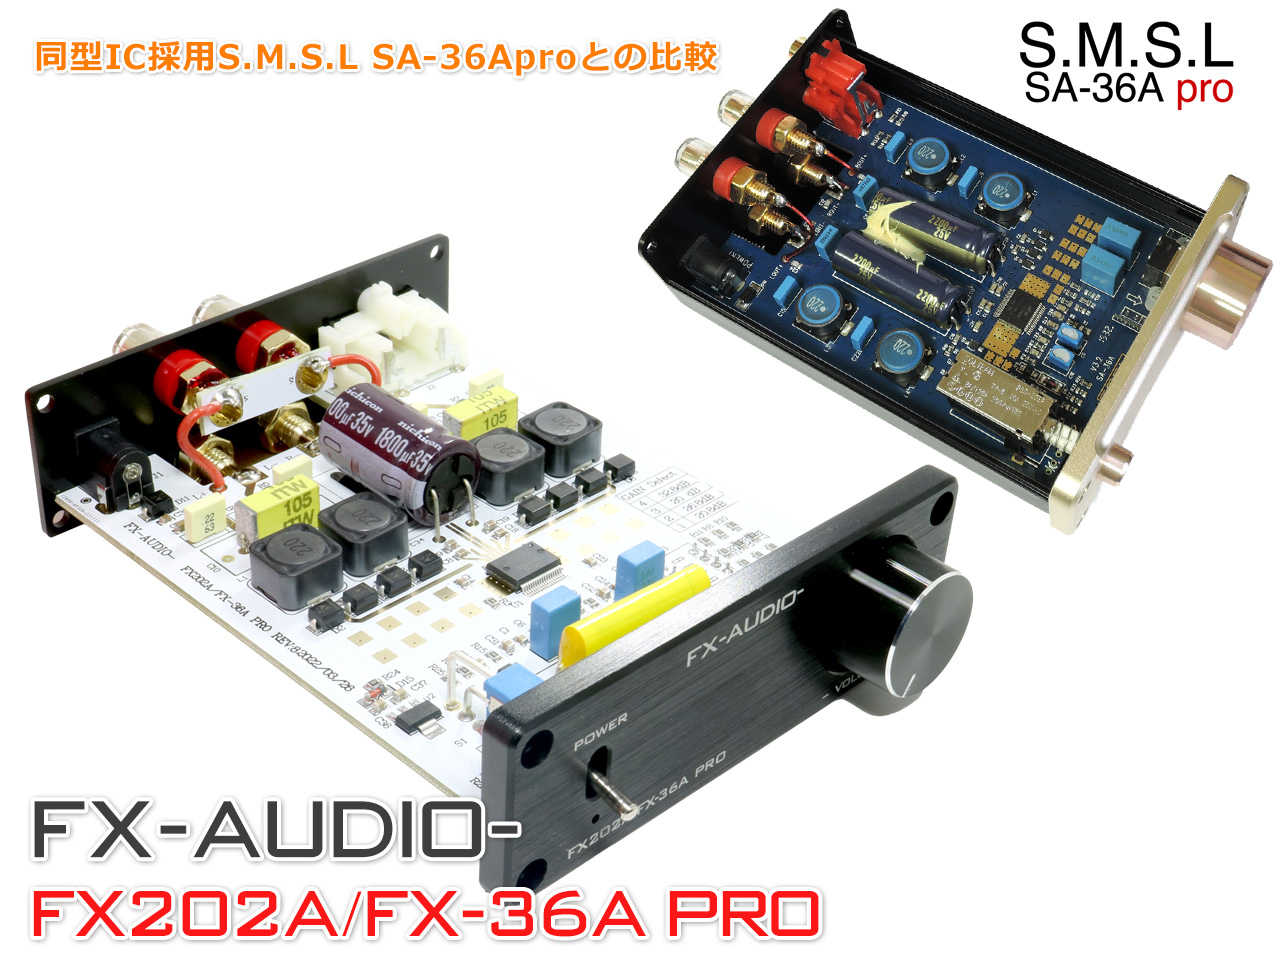 FX-AUDIO- FX202A/FX-36A PRO[ черный ]TDA7492PE цифровой усилитель IC установка стерео усилитель мощности 